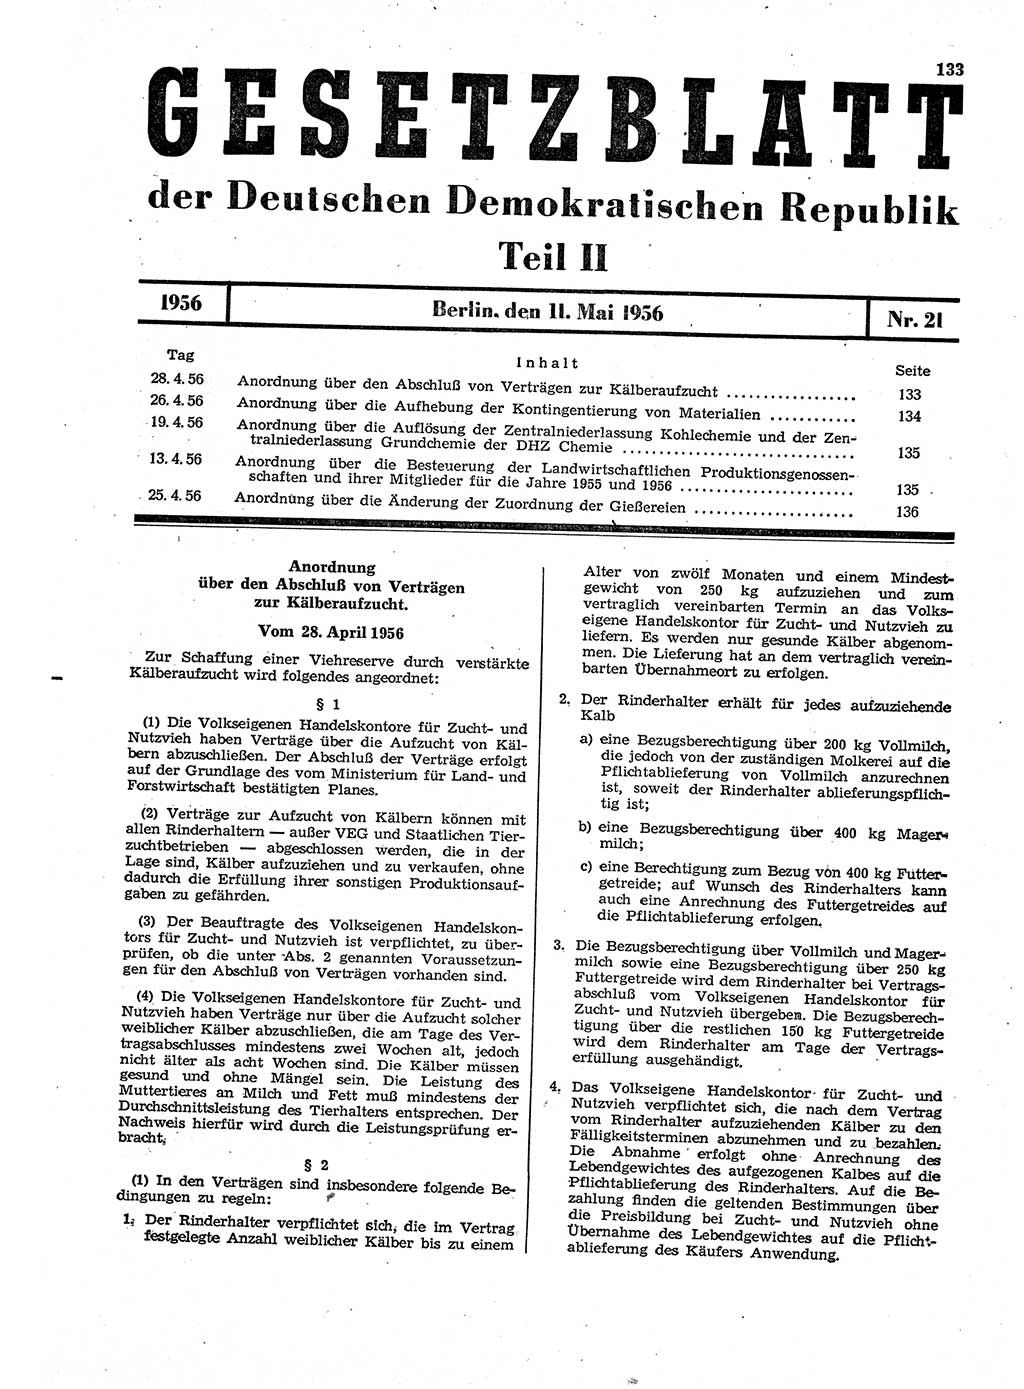 Gesetzblatt (GBl.) der Deutschen Demokratischen Republik (DDR) Teil ⅠⅠ 1956, Seite 133 (GBl. DDR ⅠⅠ 1956, S. 133)